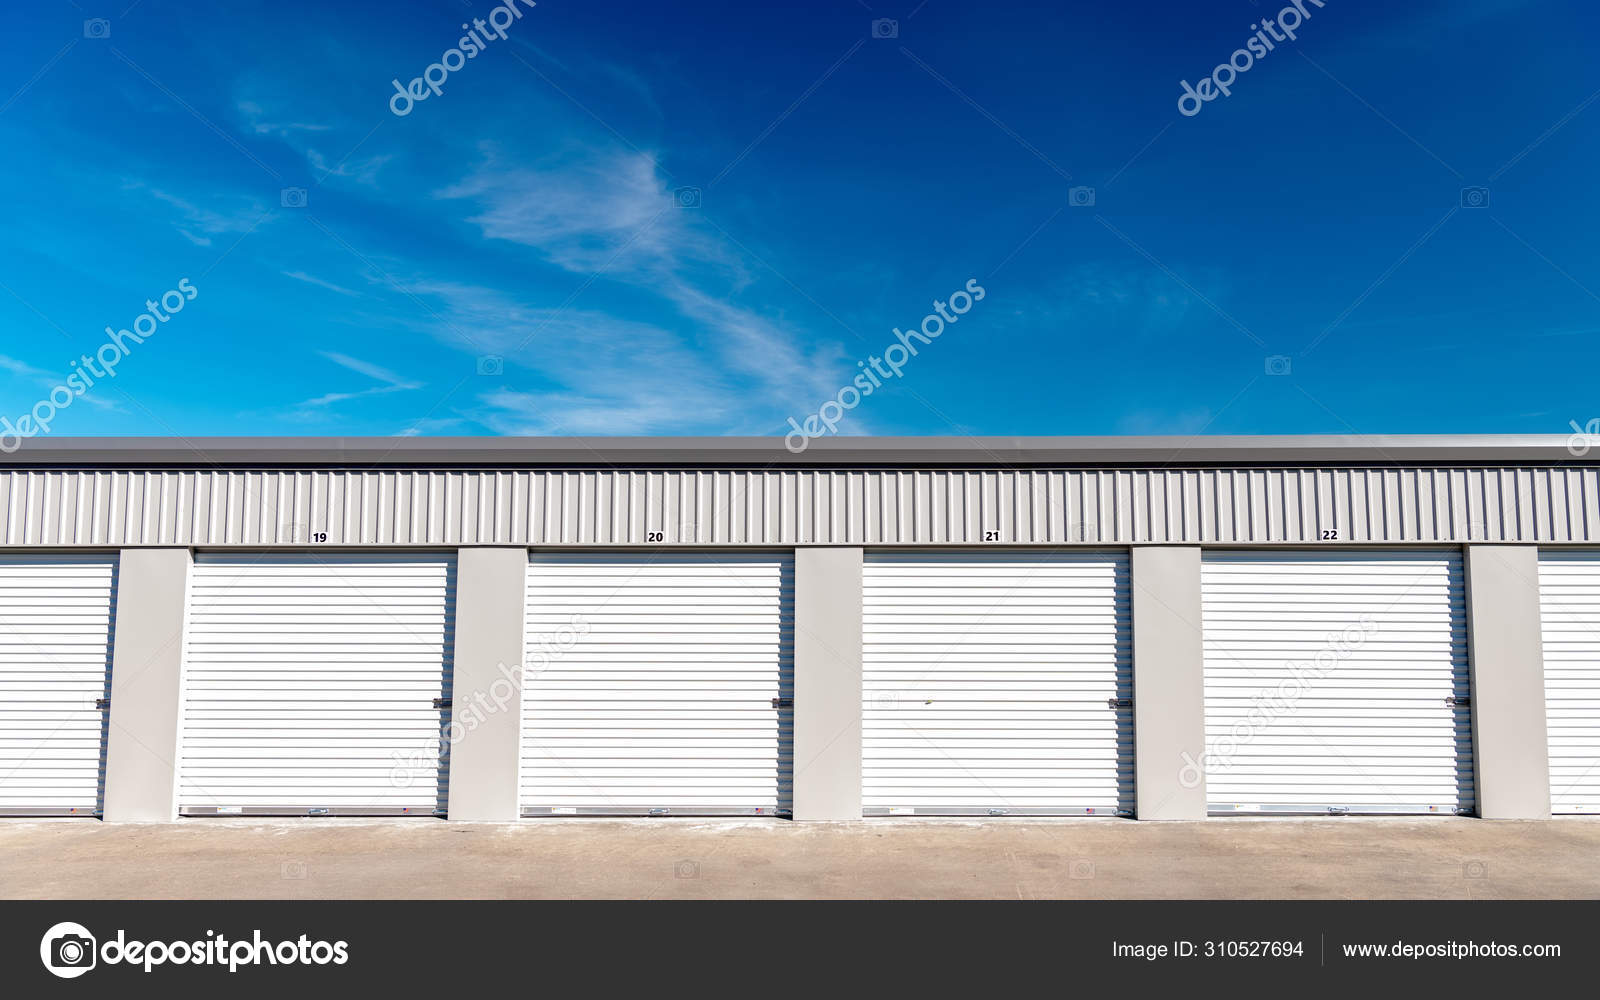 Storage Solutions - Local Garage Doors